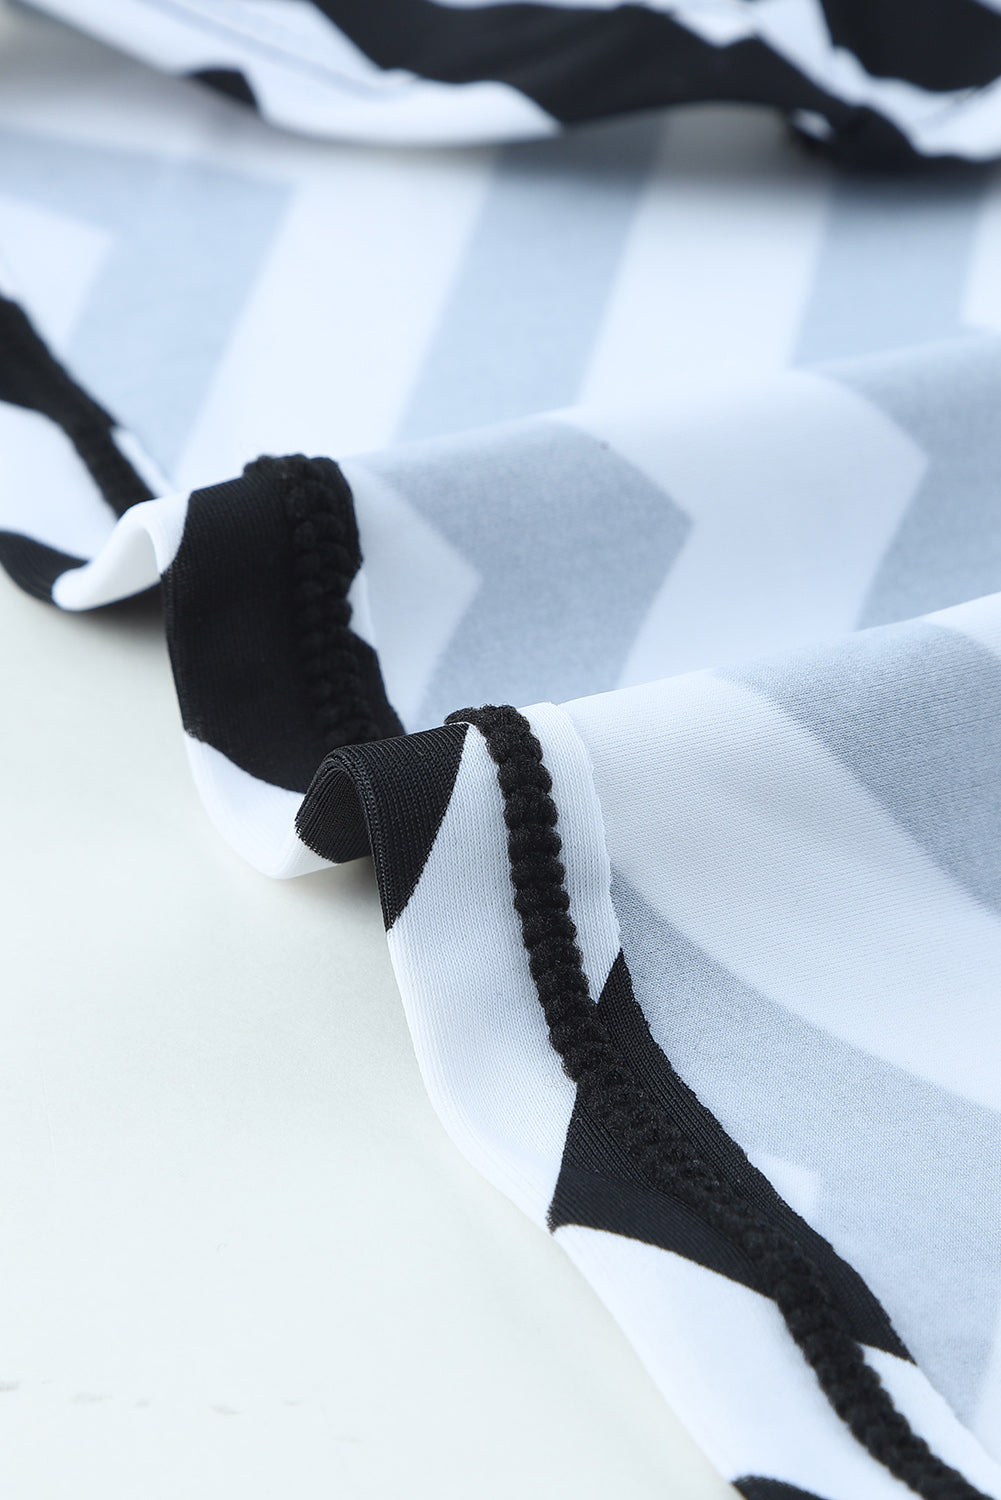 Schwarz-weißer 2-teiliger Tankini-Badeanzug mit Zickzackmuster und Mesh-Spleiß